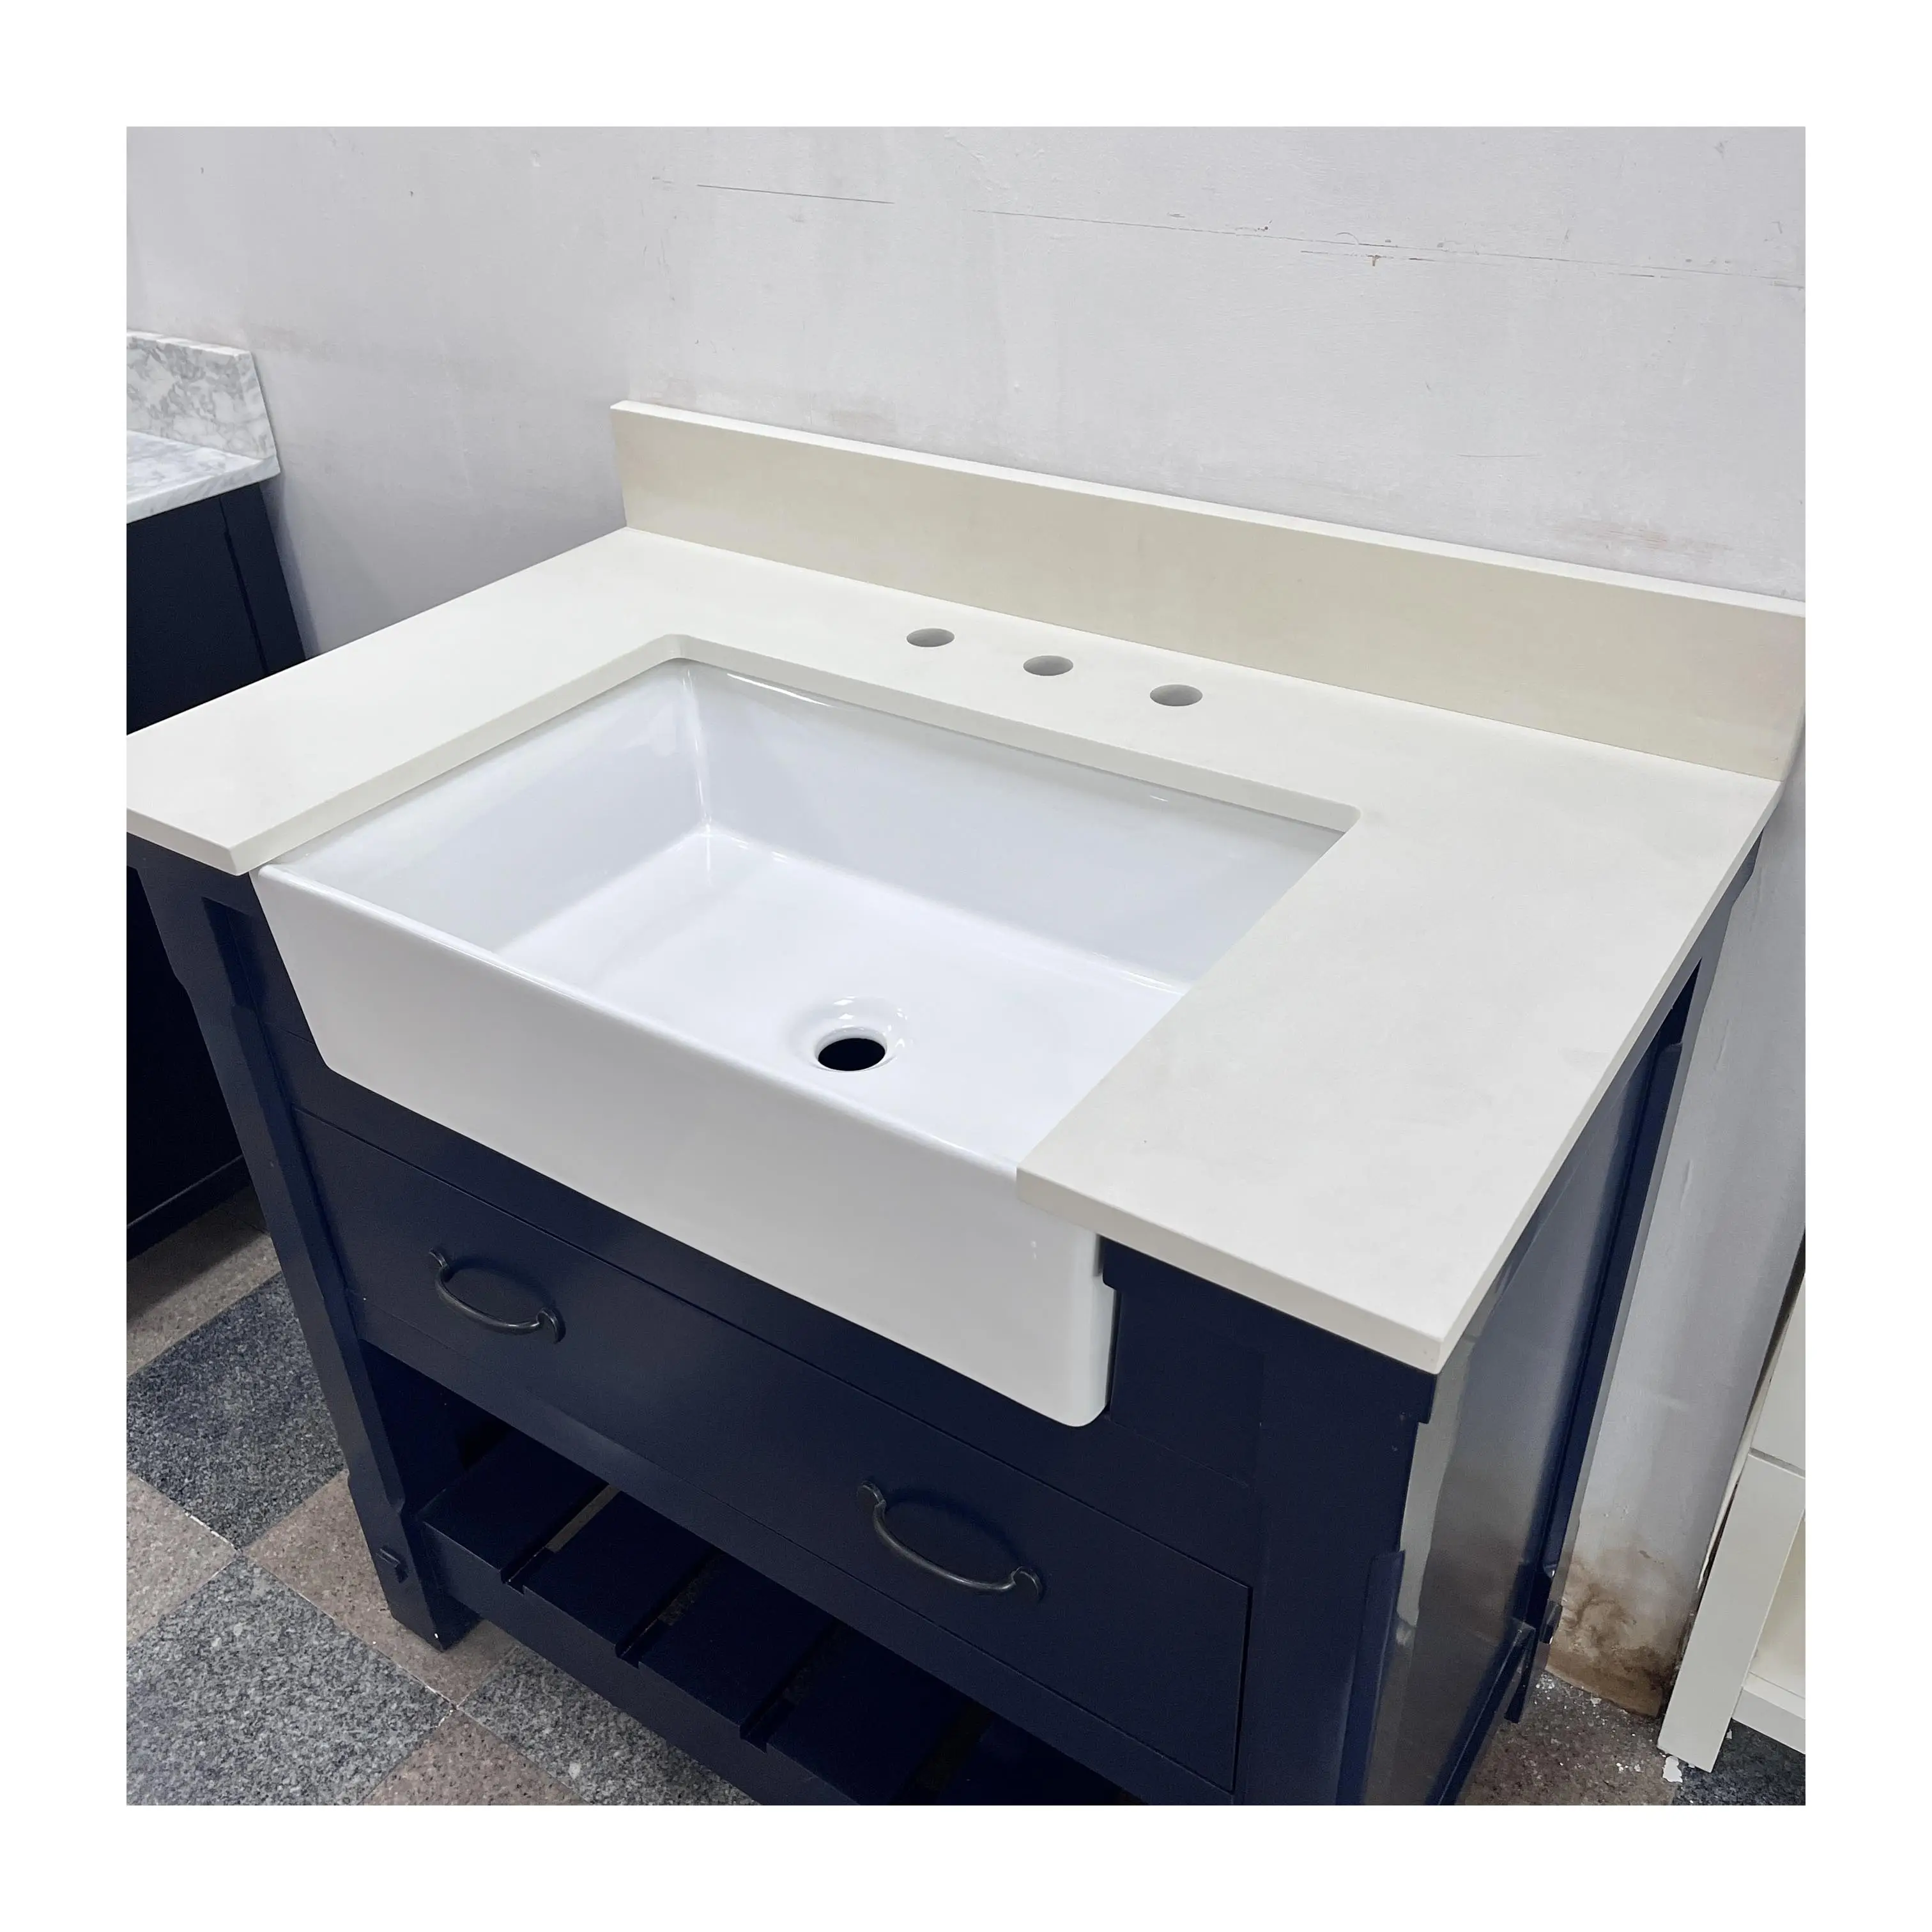 KINGS-WING Polidor de 20 mm de Espessura ideal para banheiros modernos com pia projetado em Quartzo Branco Puro Modelo SMB006